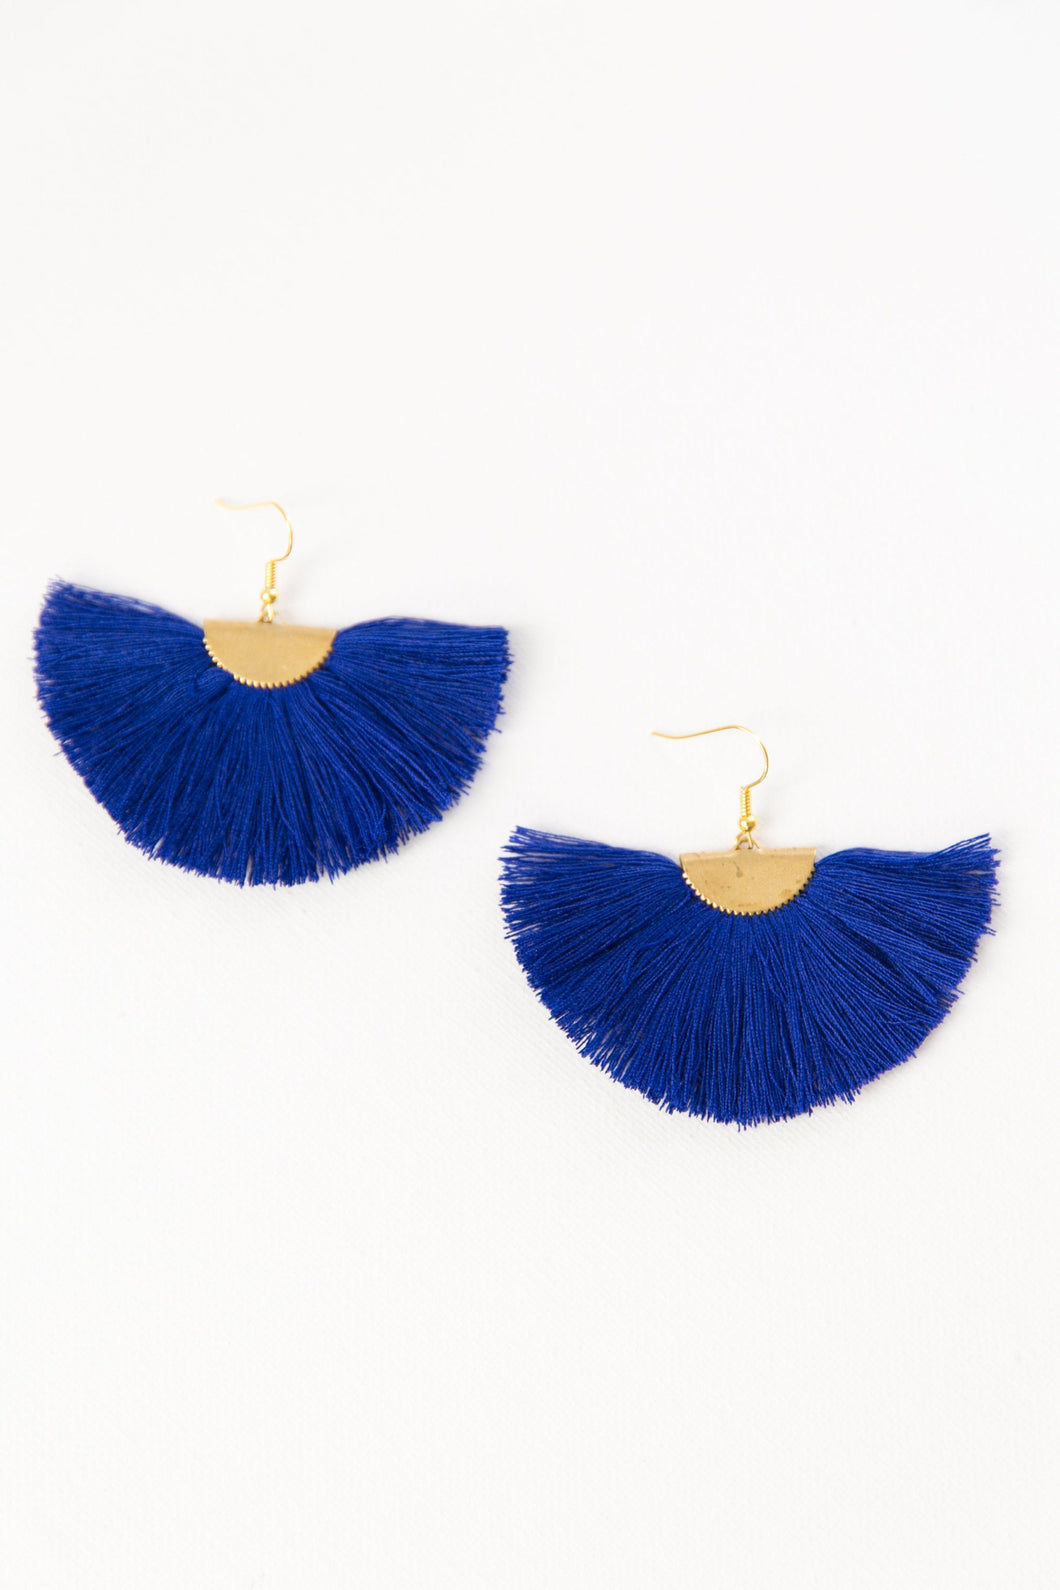 THE FONDA royal blue fan tassel earrings